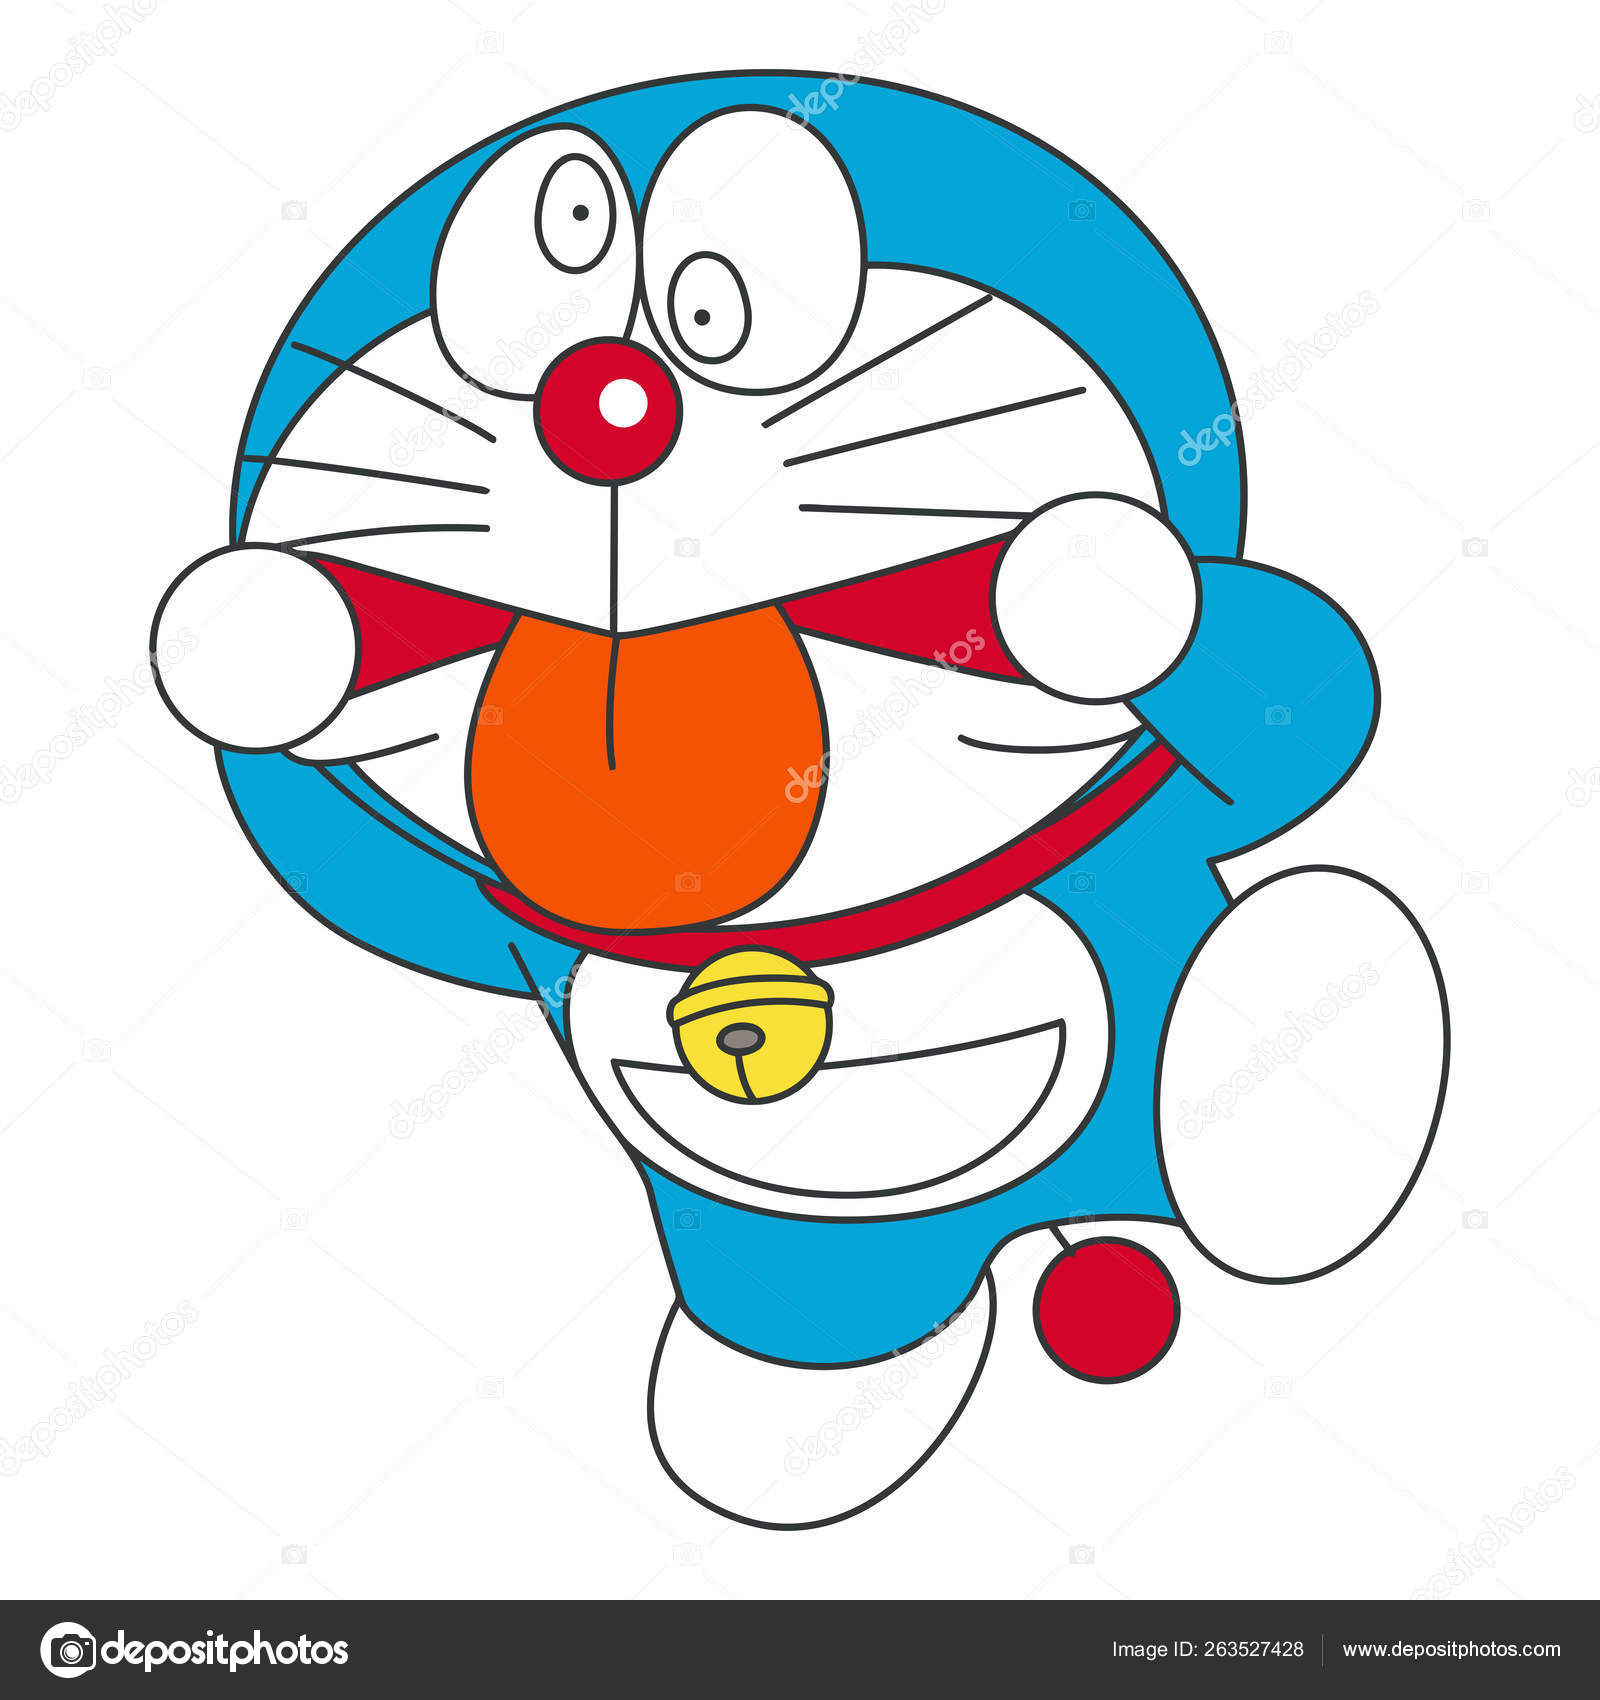  Doraemon  Personagem Jap o Mang  Grimace Ilustra  o 